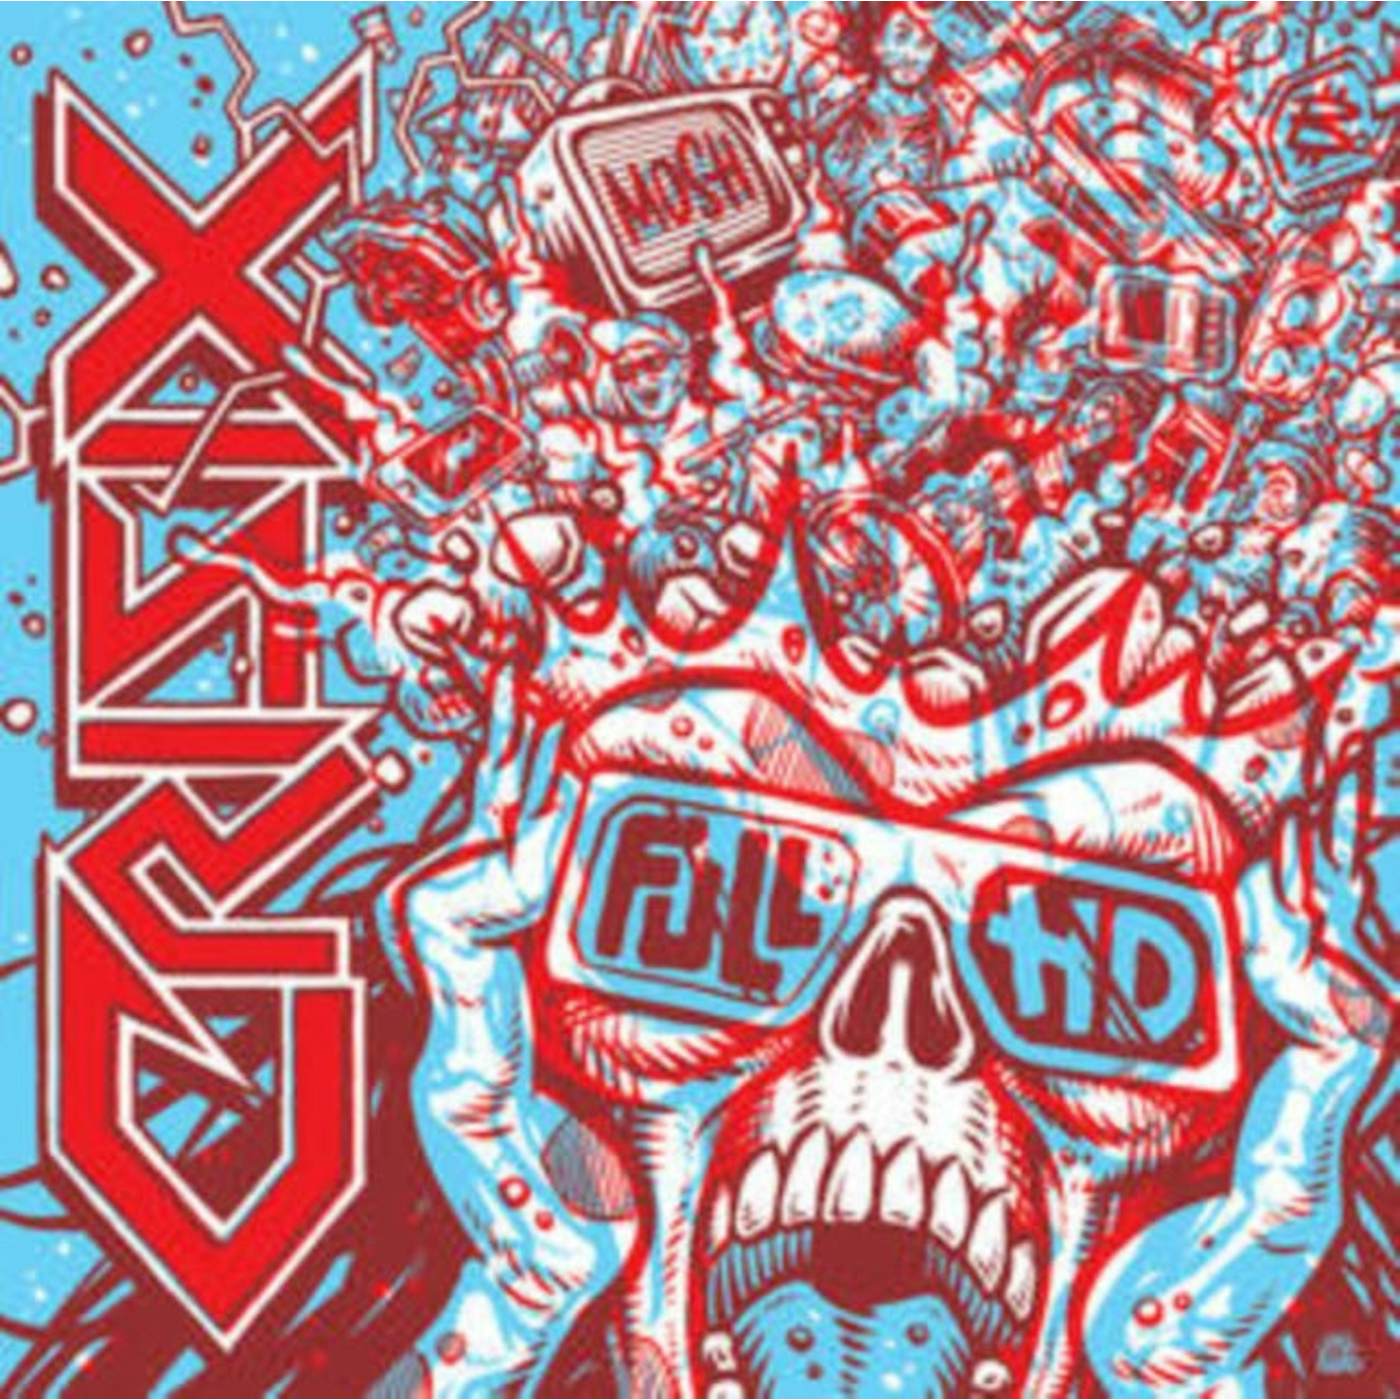 Crisix LP - Full Hd (Vinyl)